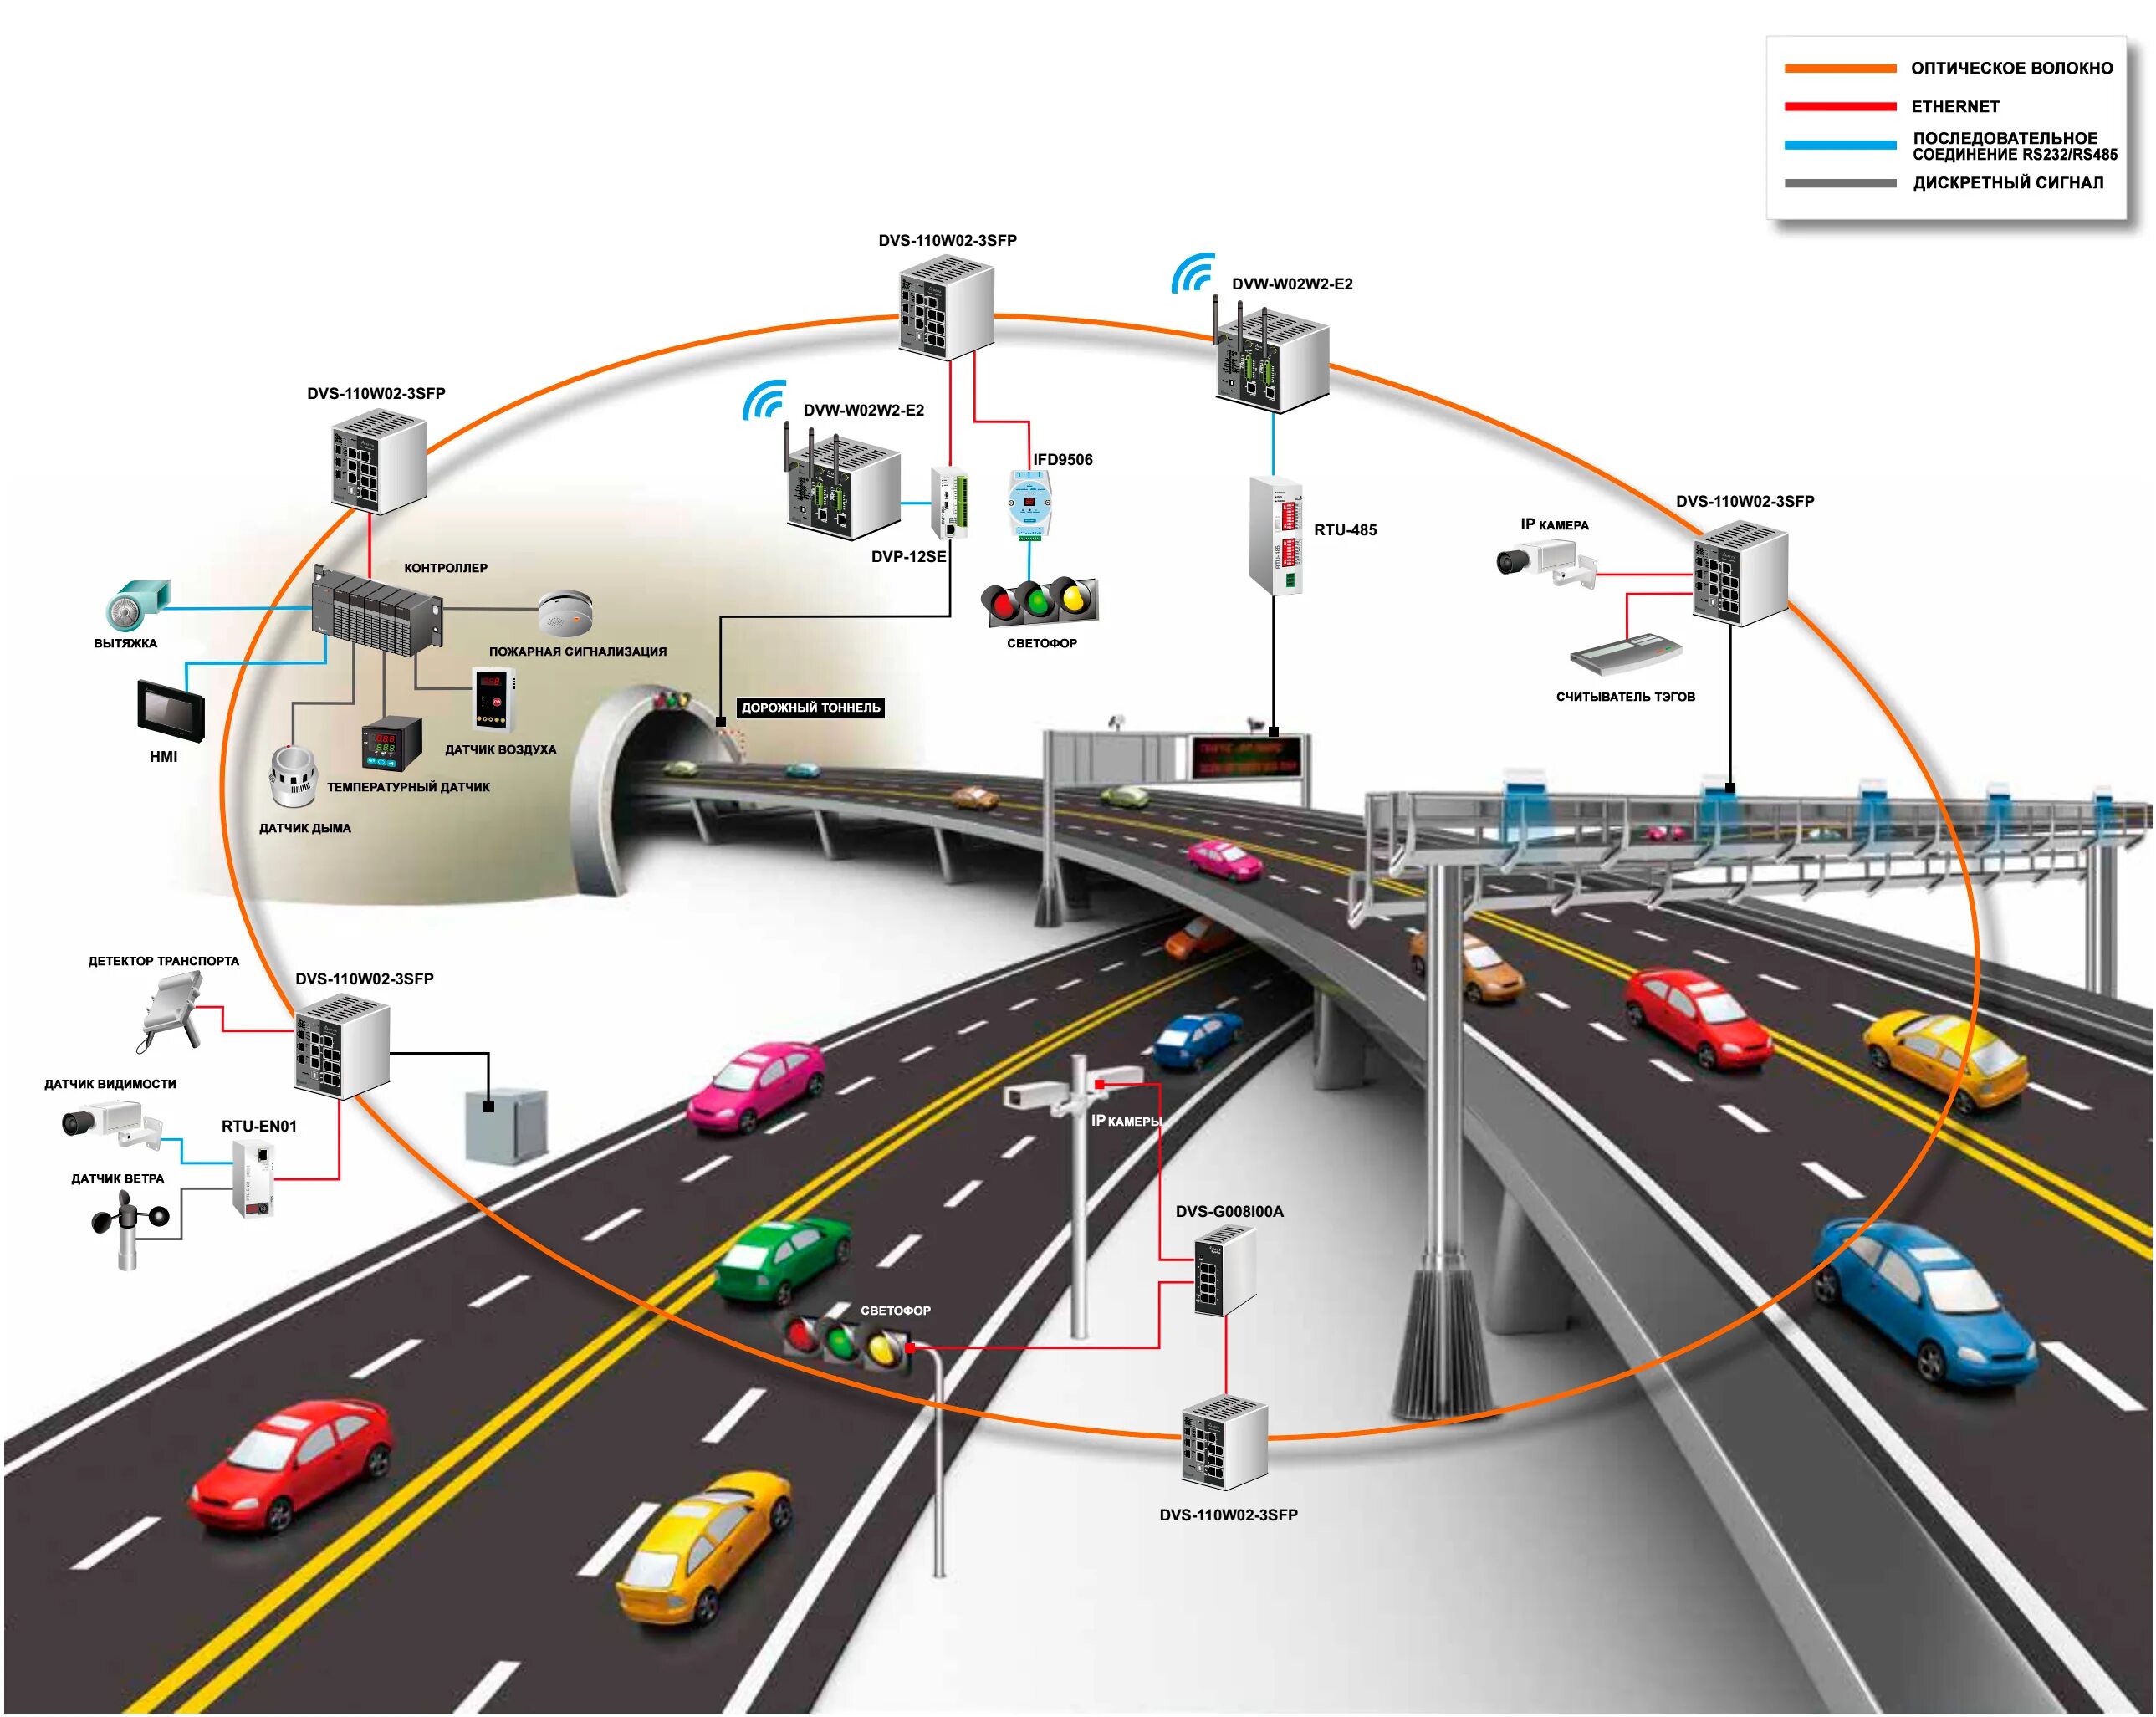 И т п быстро. Автоматизированная система управления дорожным движением АСУДД. ИТС интеллектуальные транспортные системы. Интеллектуальной транспортной системы АСУДД. Детекторы транспортного потока.